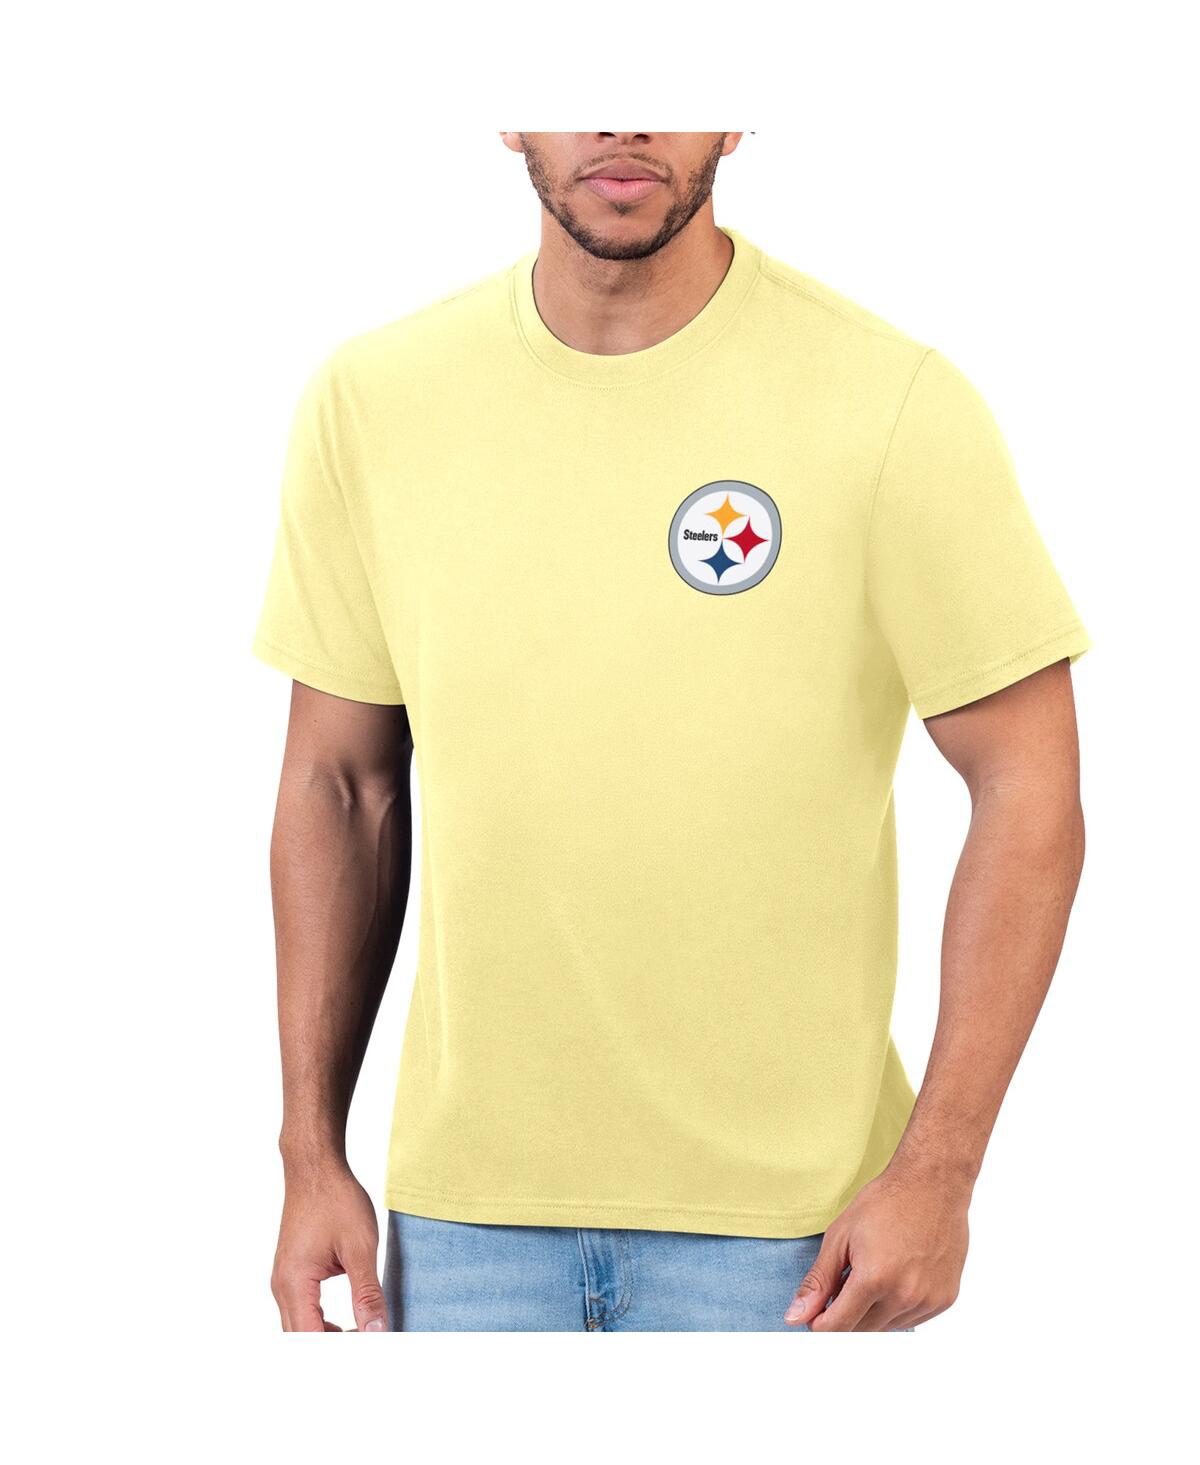 Men's Margaritaville Yellow Pittsburgh Steelers T-shirt - Yellow